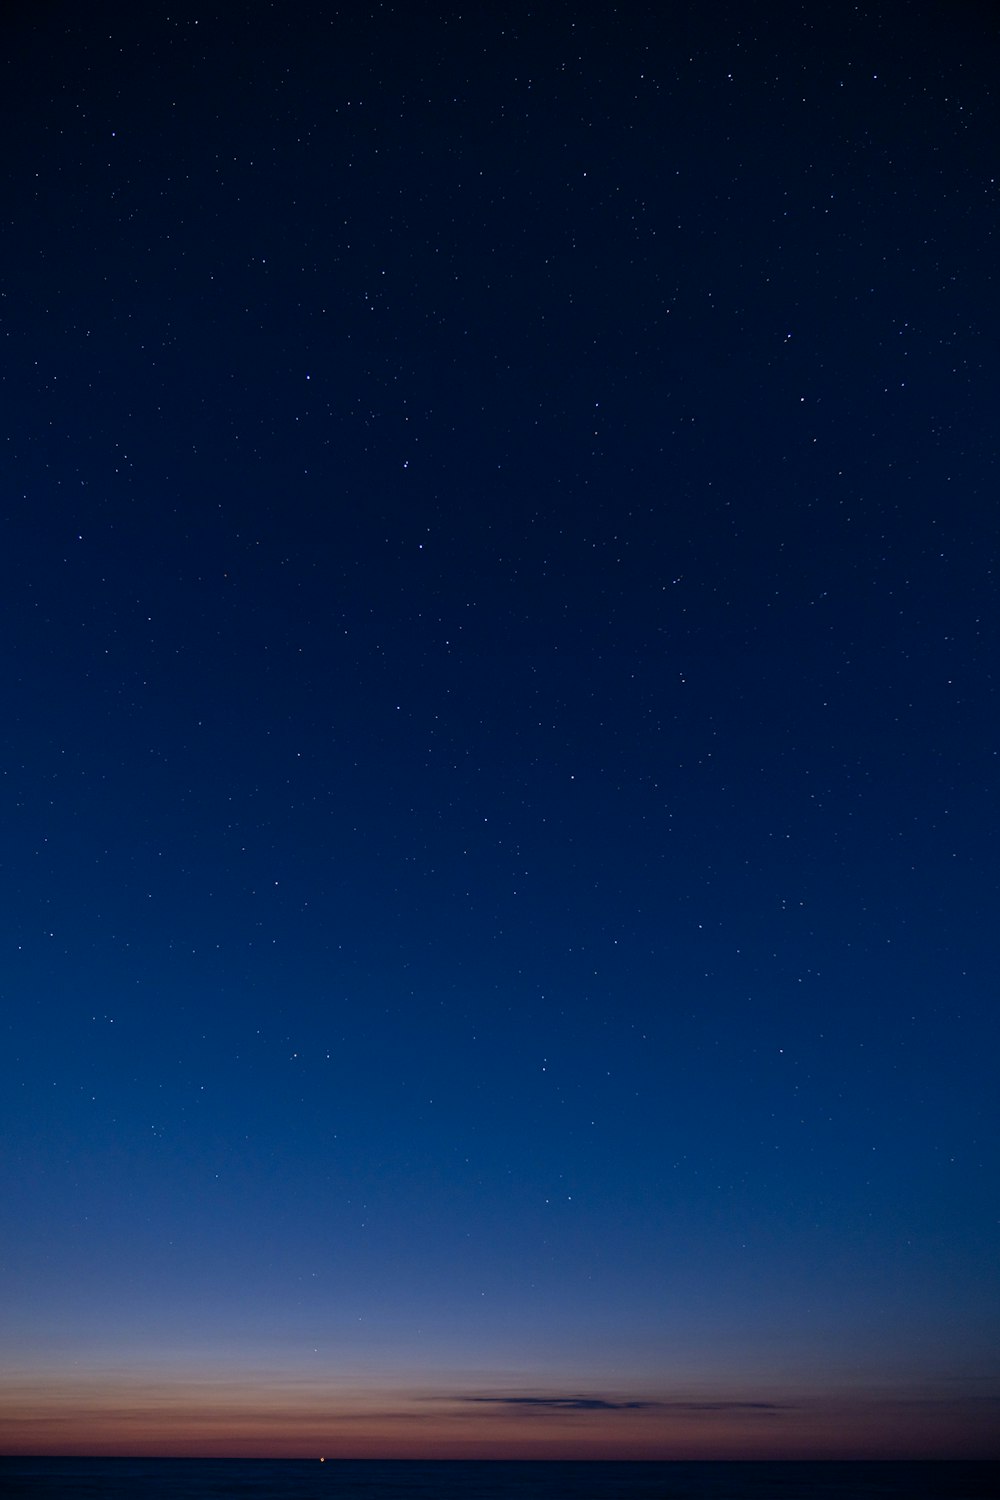 Un cielo nocturno estrellado sobre una llanura plana